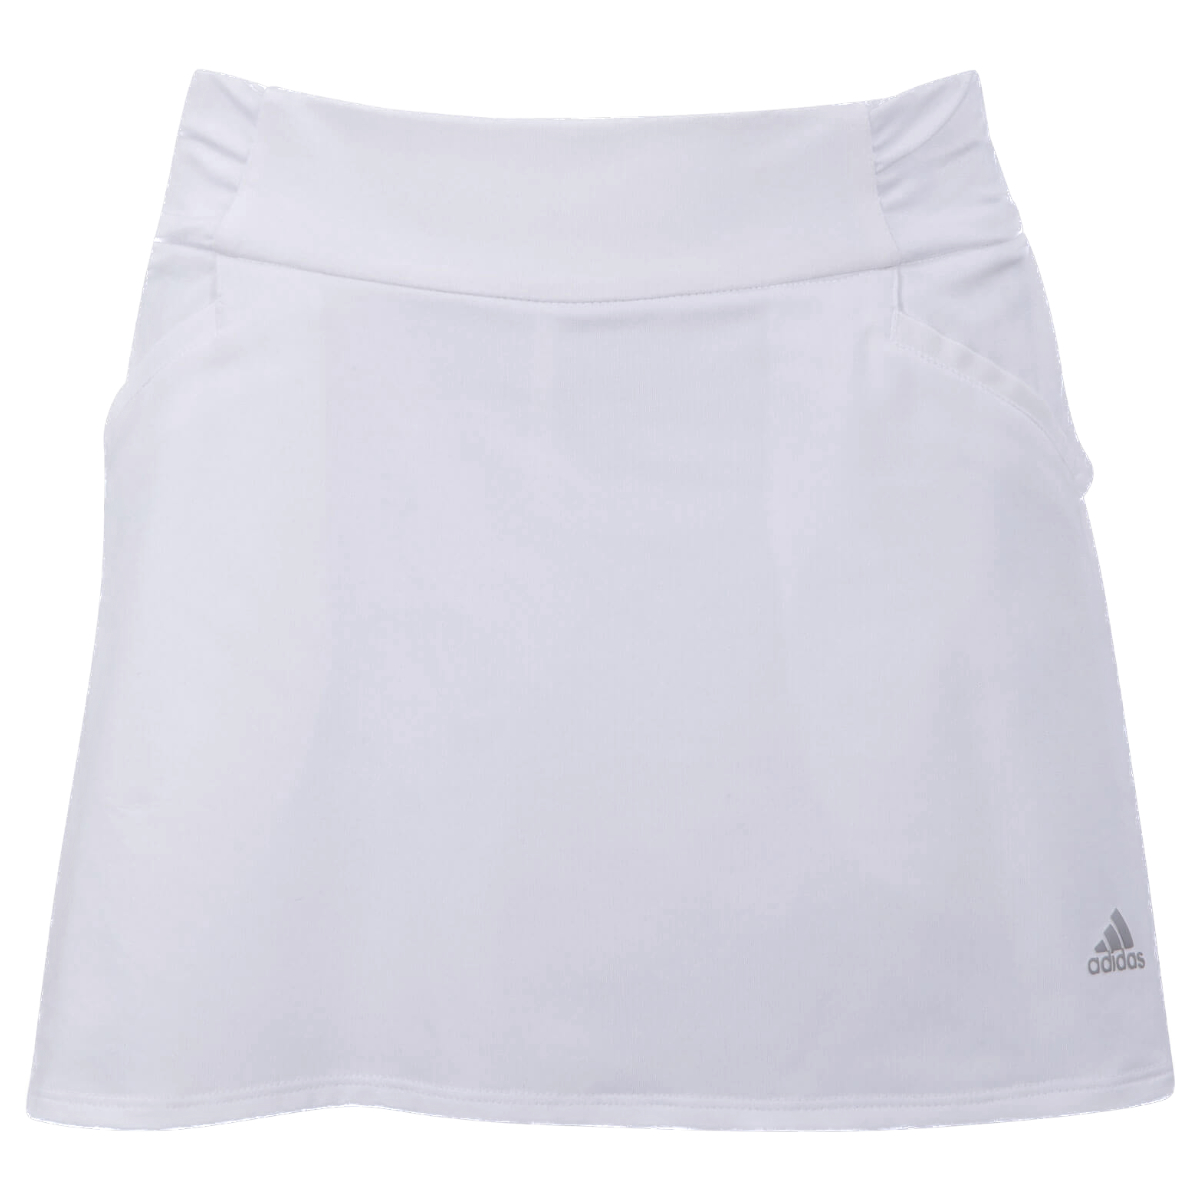 Adidas Girls Ruffled Skirt White